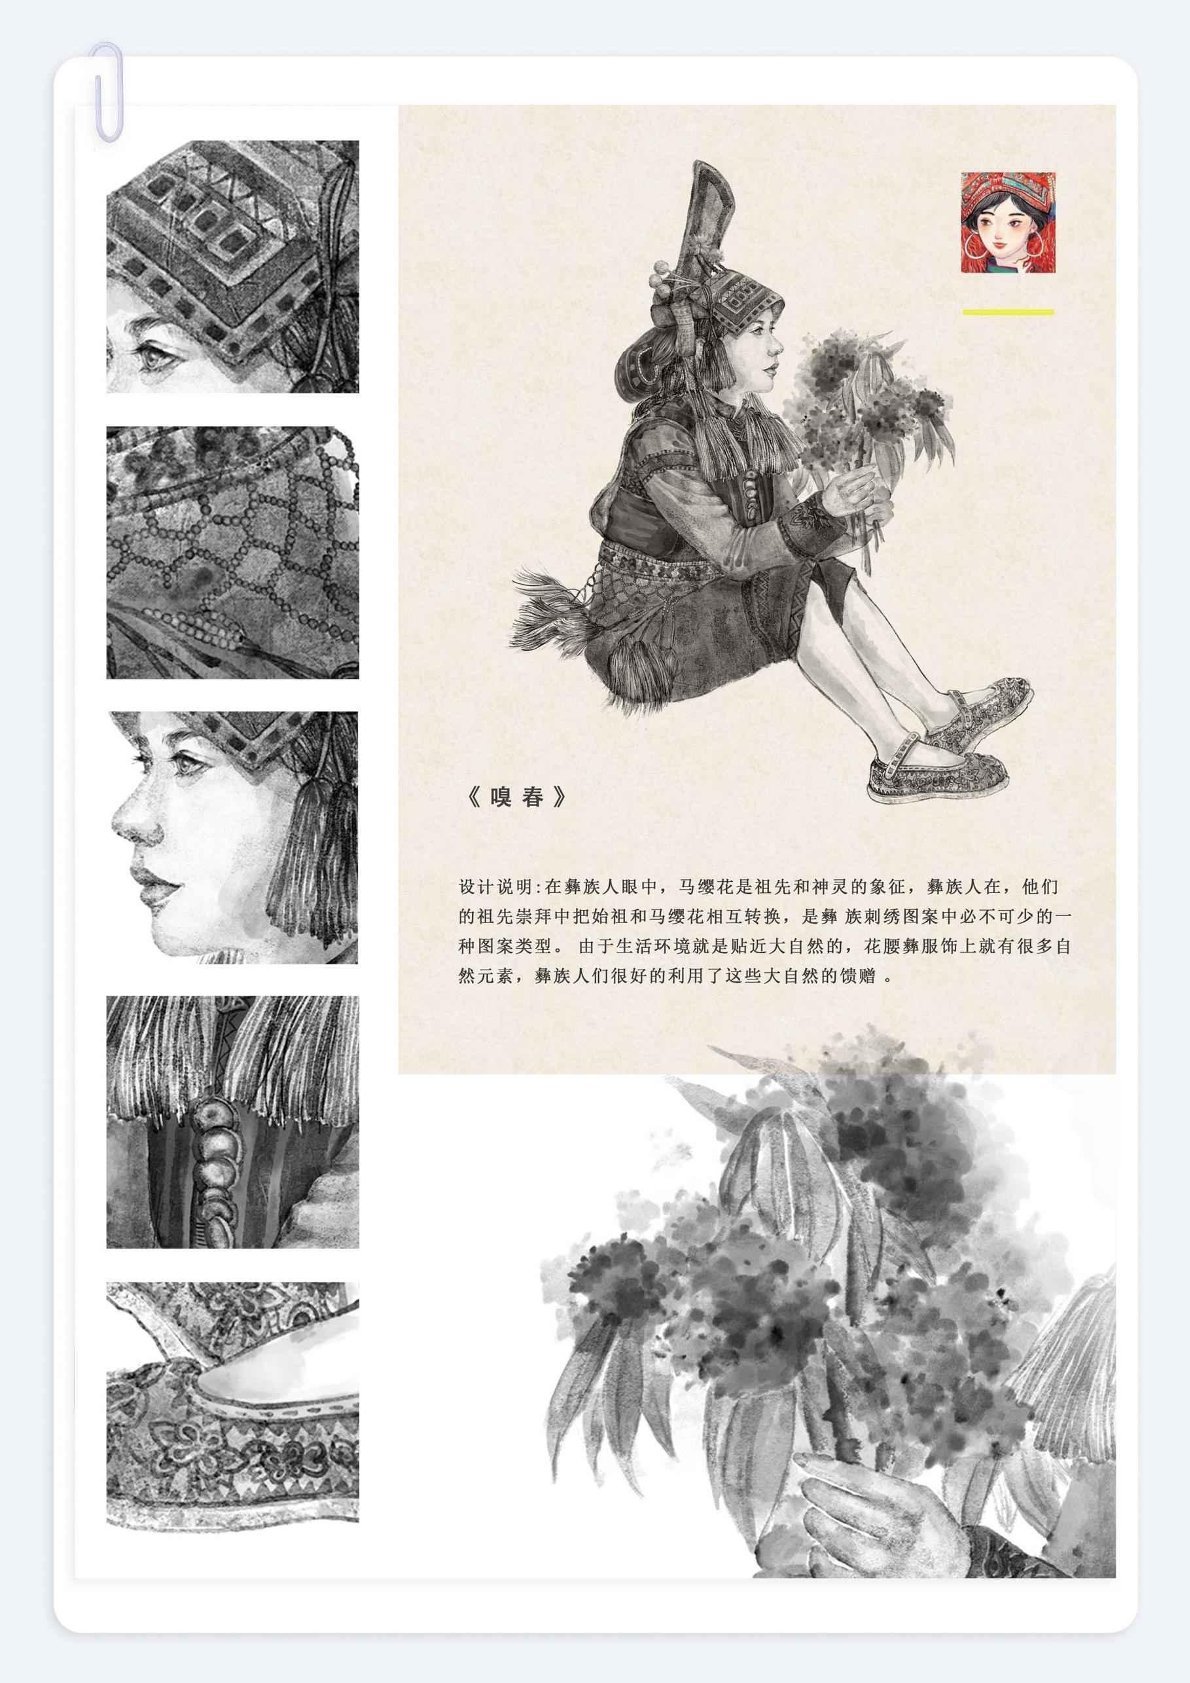 花腰彝服饰与刺绣工艺绘本（清华美院出版）图5